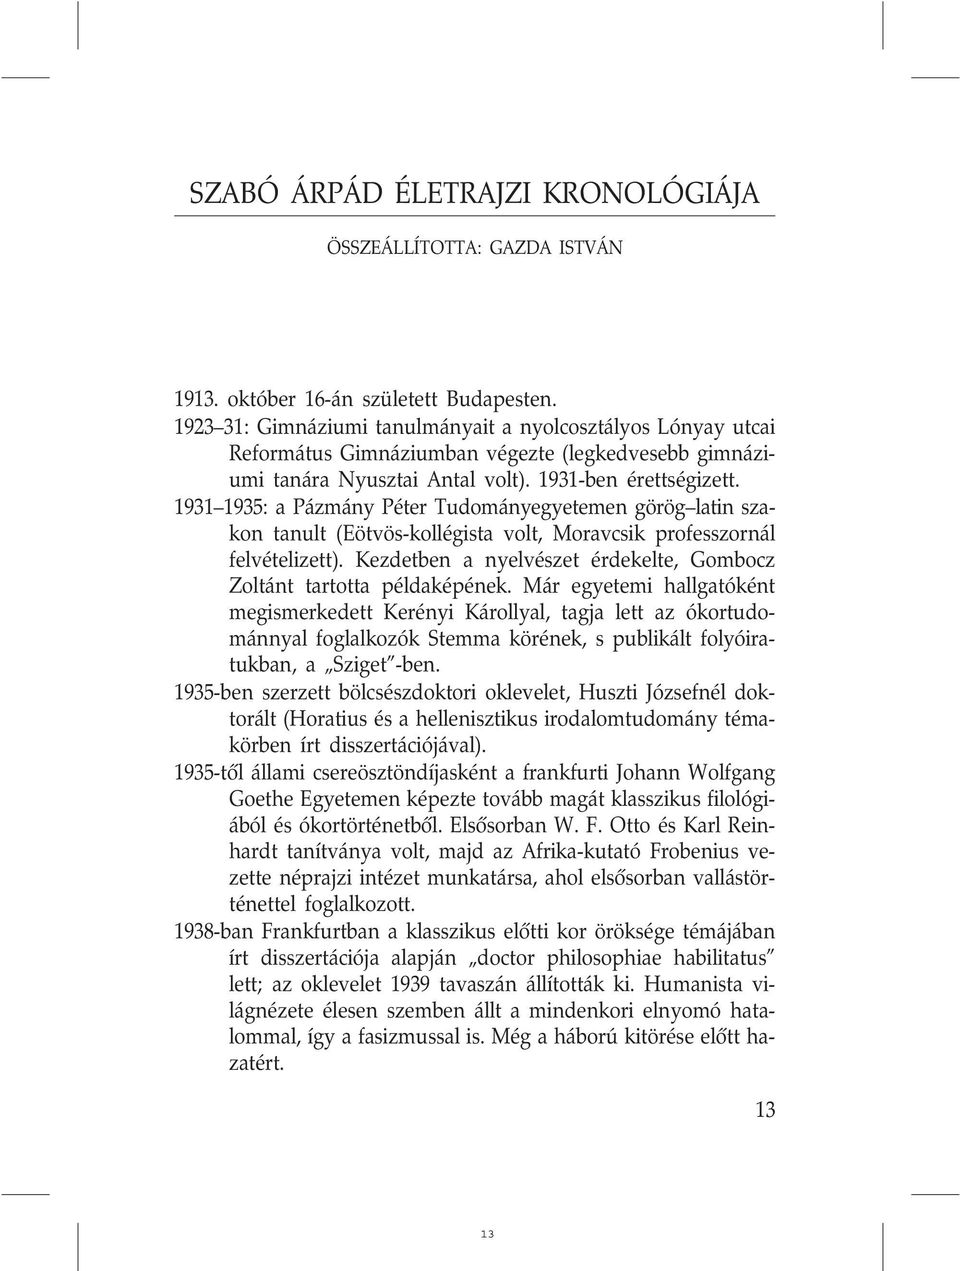 1931 1935: a Pázmány Péter Tudományegyetemen görög latin szakon tanult (Eötvös-kollégista volt, Moravcsik professzornál felvételizett).